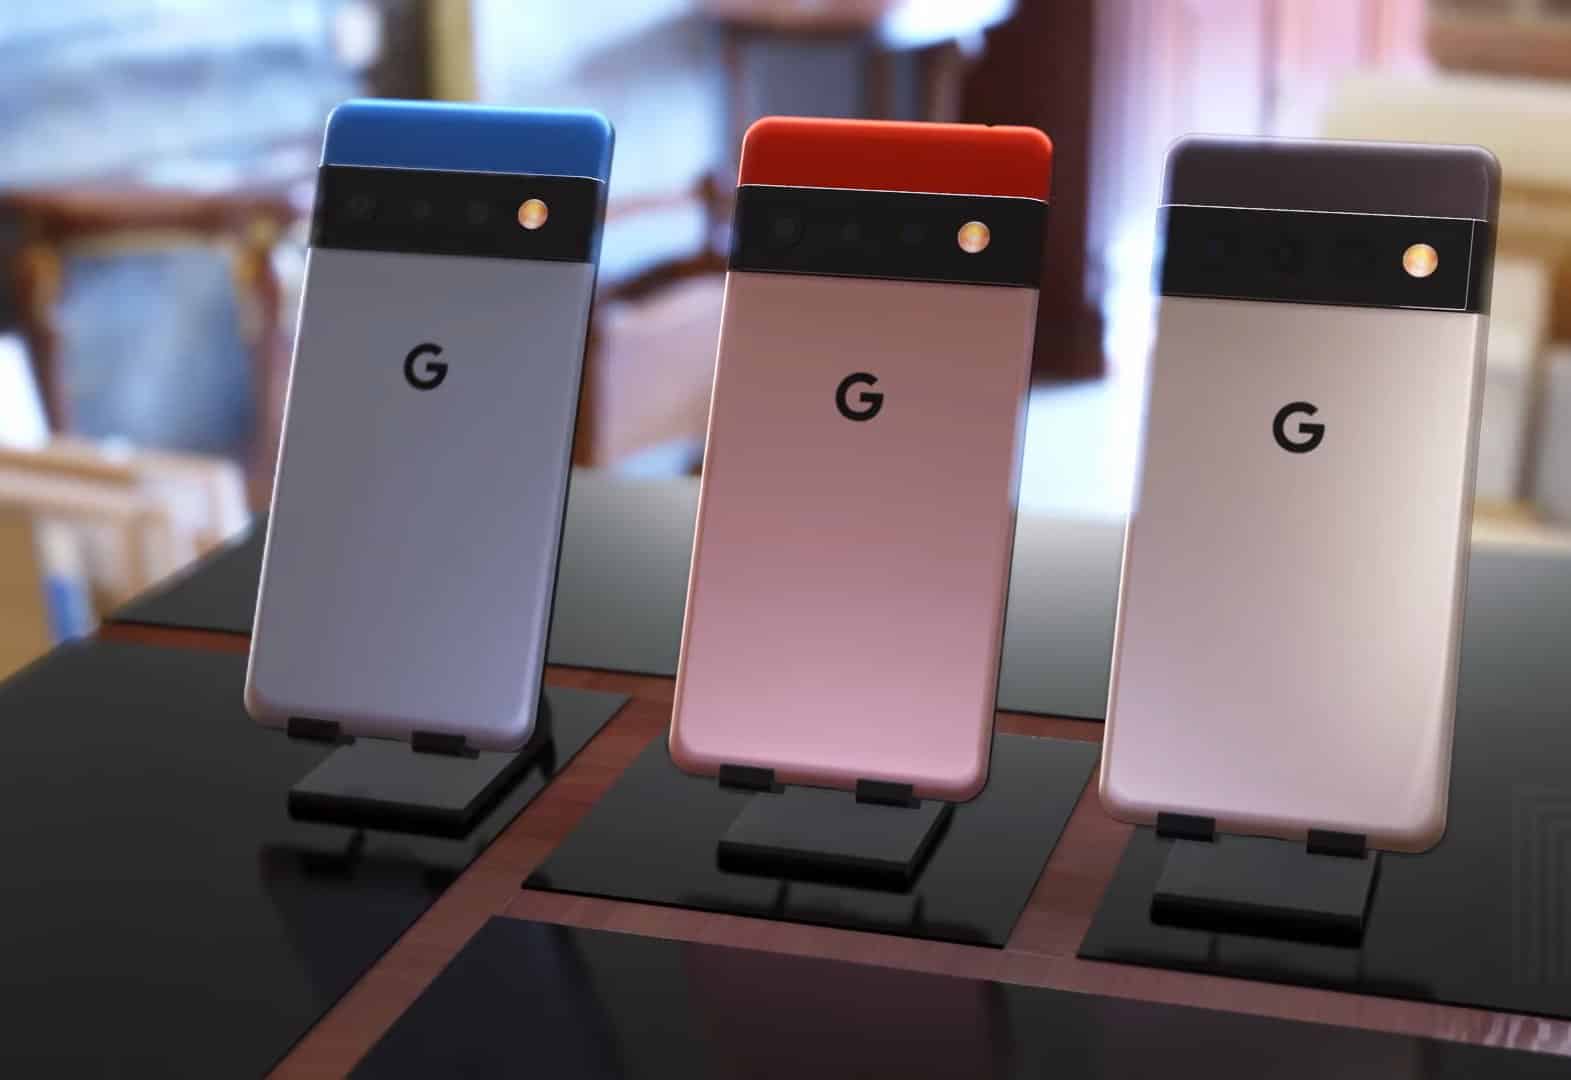 Гугл 7 телефон купить. Pixel 6 Pro. Google Pixel 6. Google Pixel 6 Pro. Google Pixel 6 Coral.